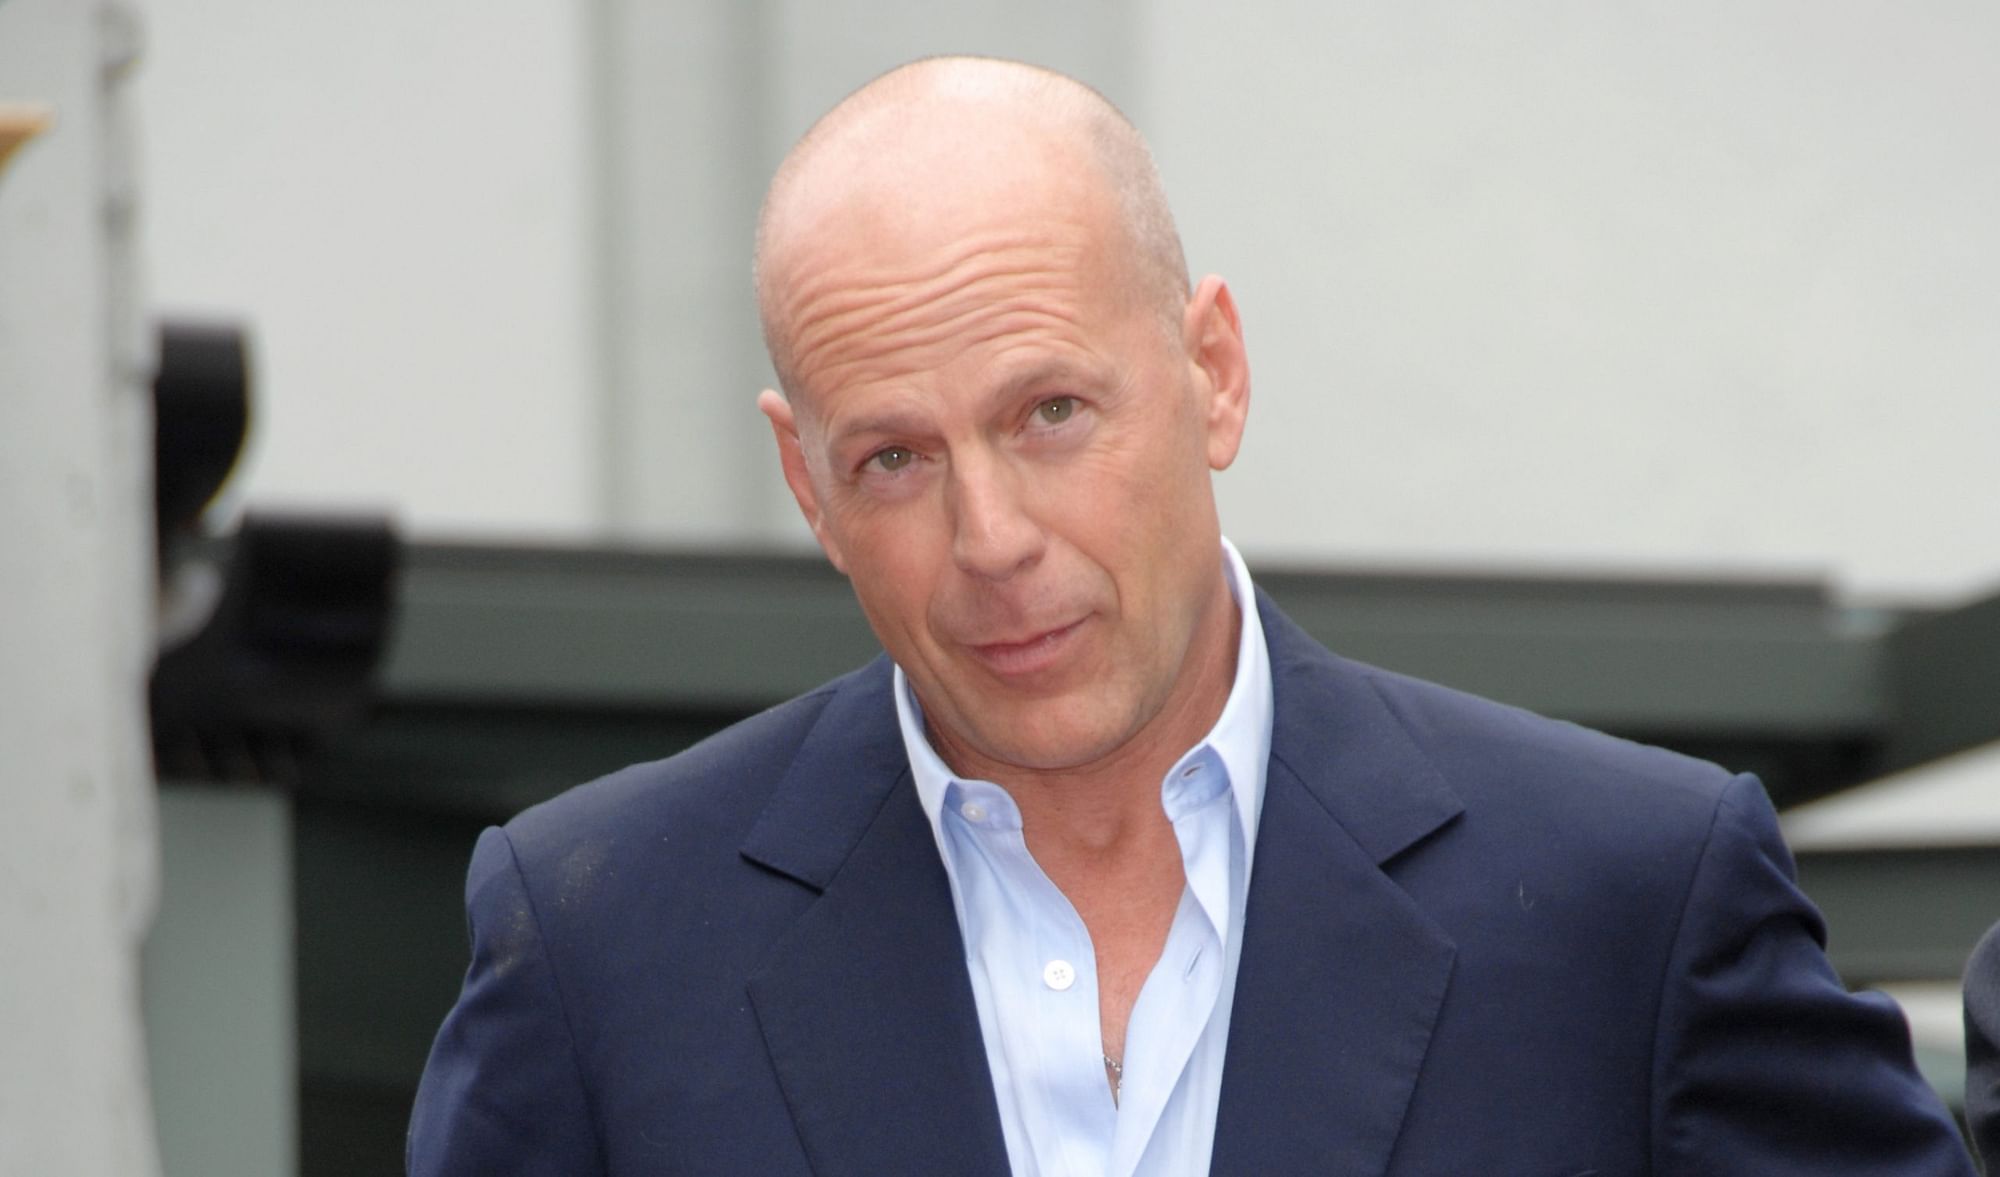 <div class="paragraphs"><p>The actors family announced that Bruce Willis has dementia.</p></div>